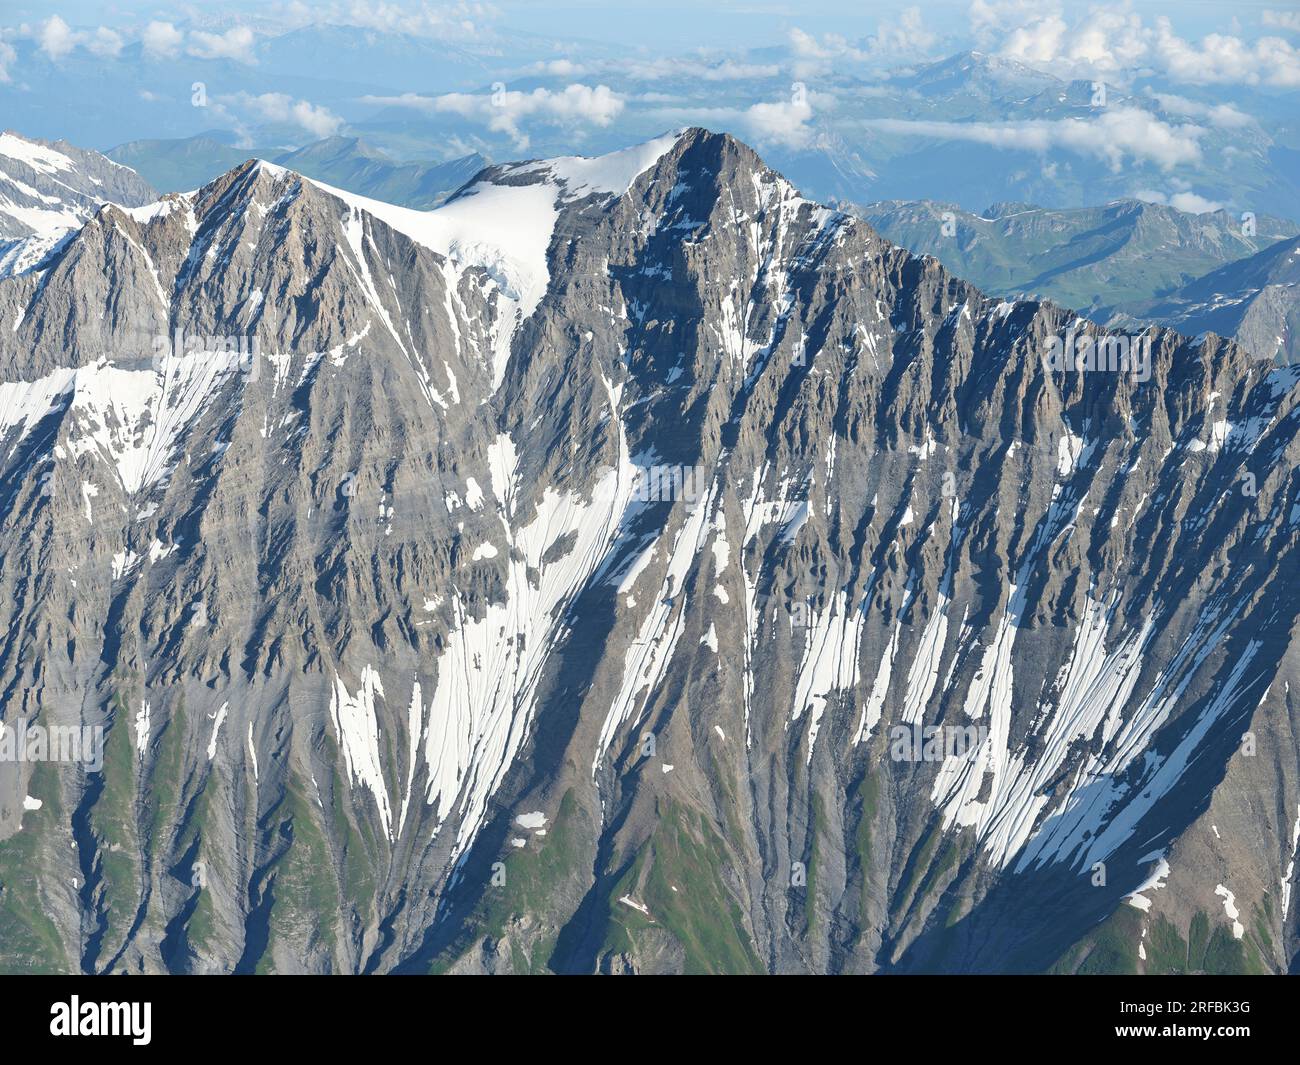 LUFTAUFNAHME. Südseite des Mount Grande Casse (Höhe: 3855m m), dies ist der höchste Gipfel im Vanoise Massiv. Auvergne-Rhône-Alpes, Frankreich. Stockfoto